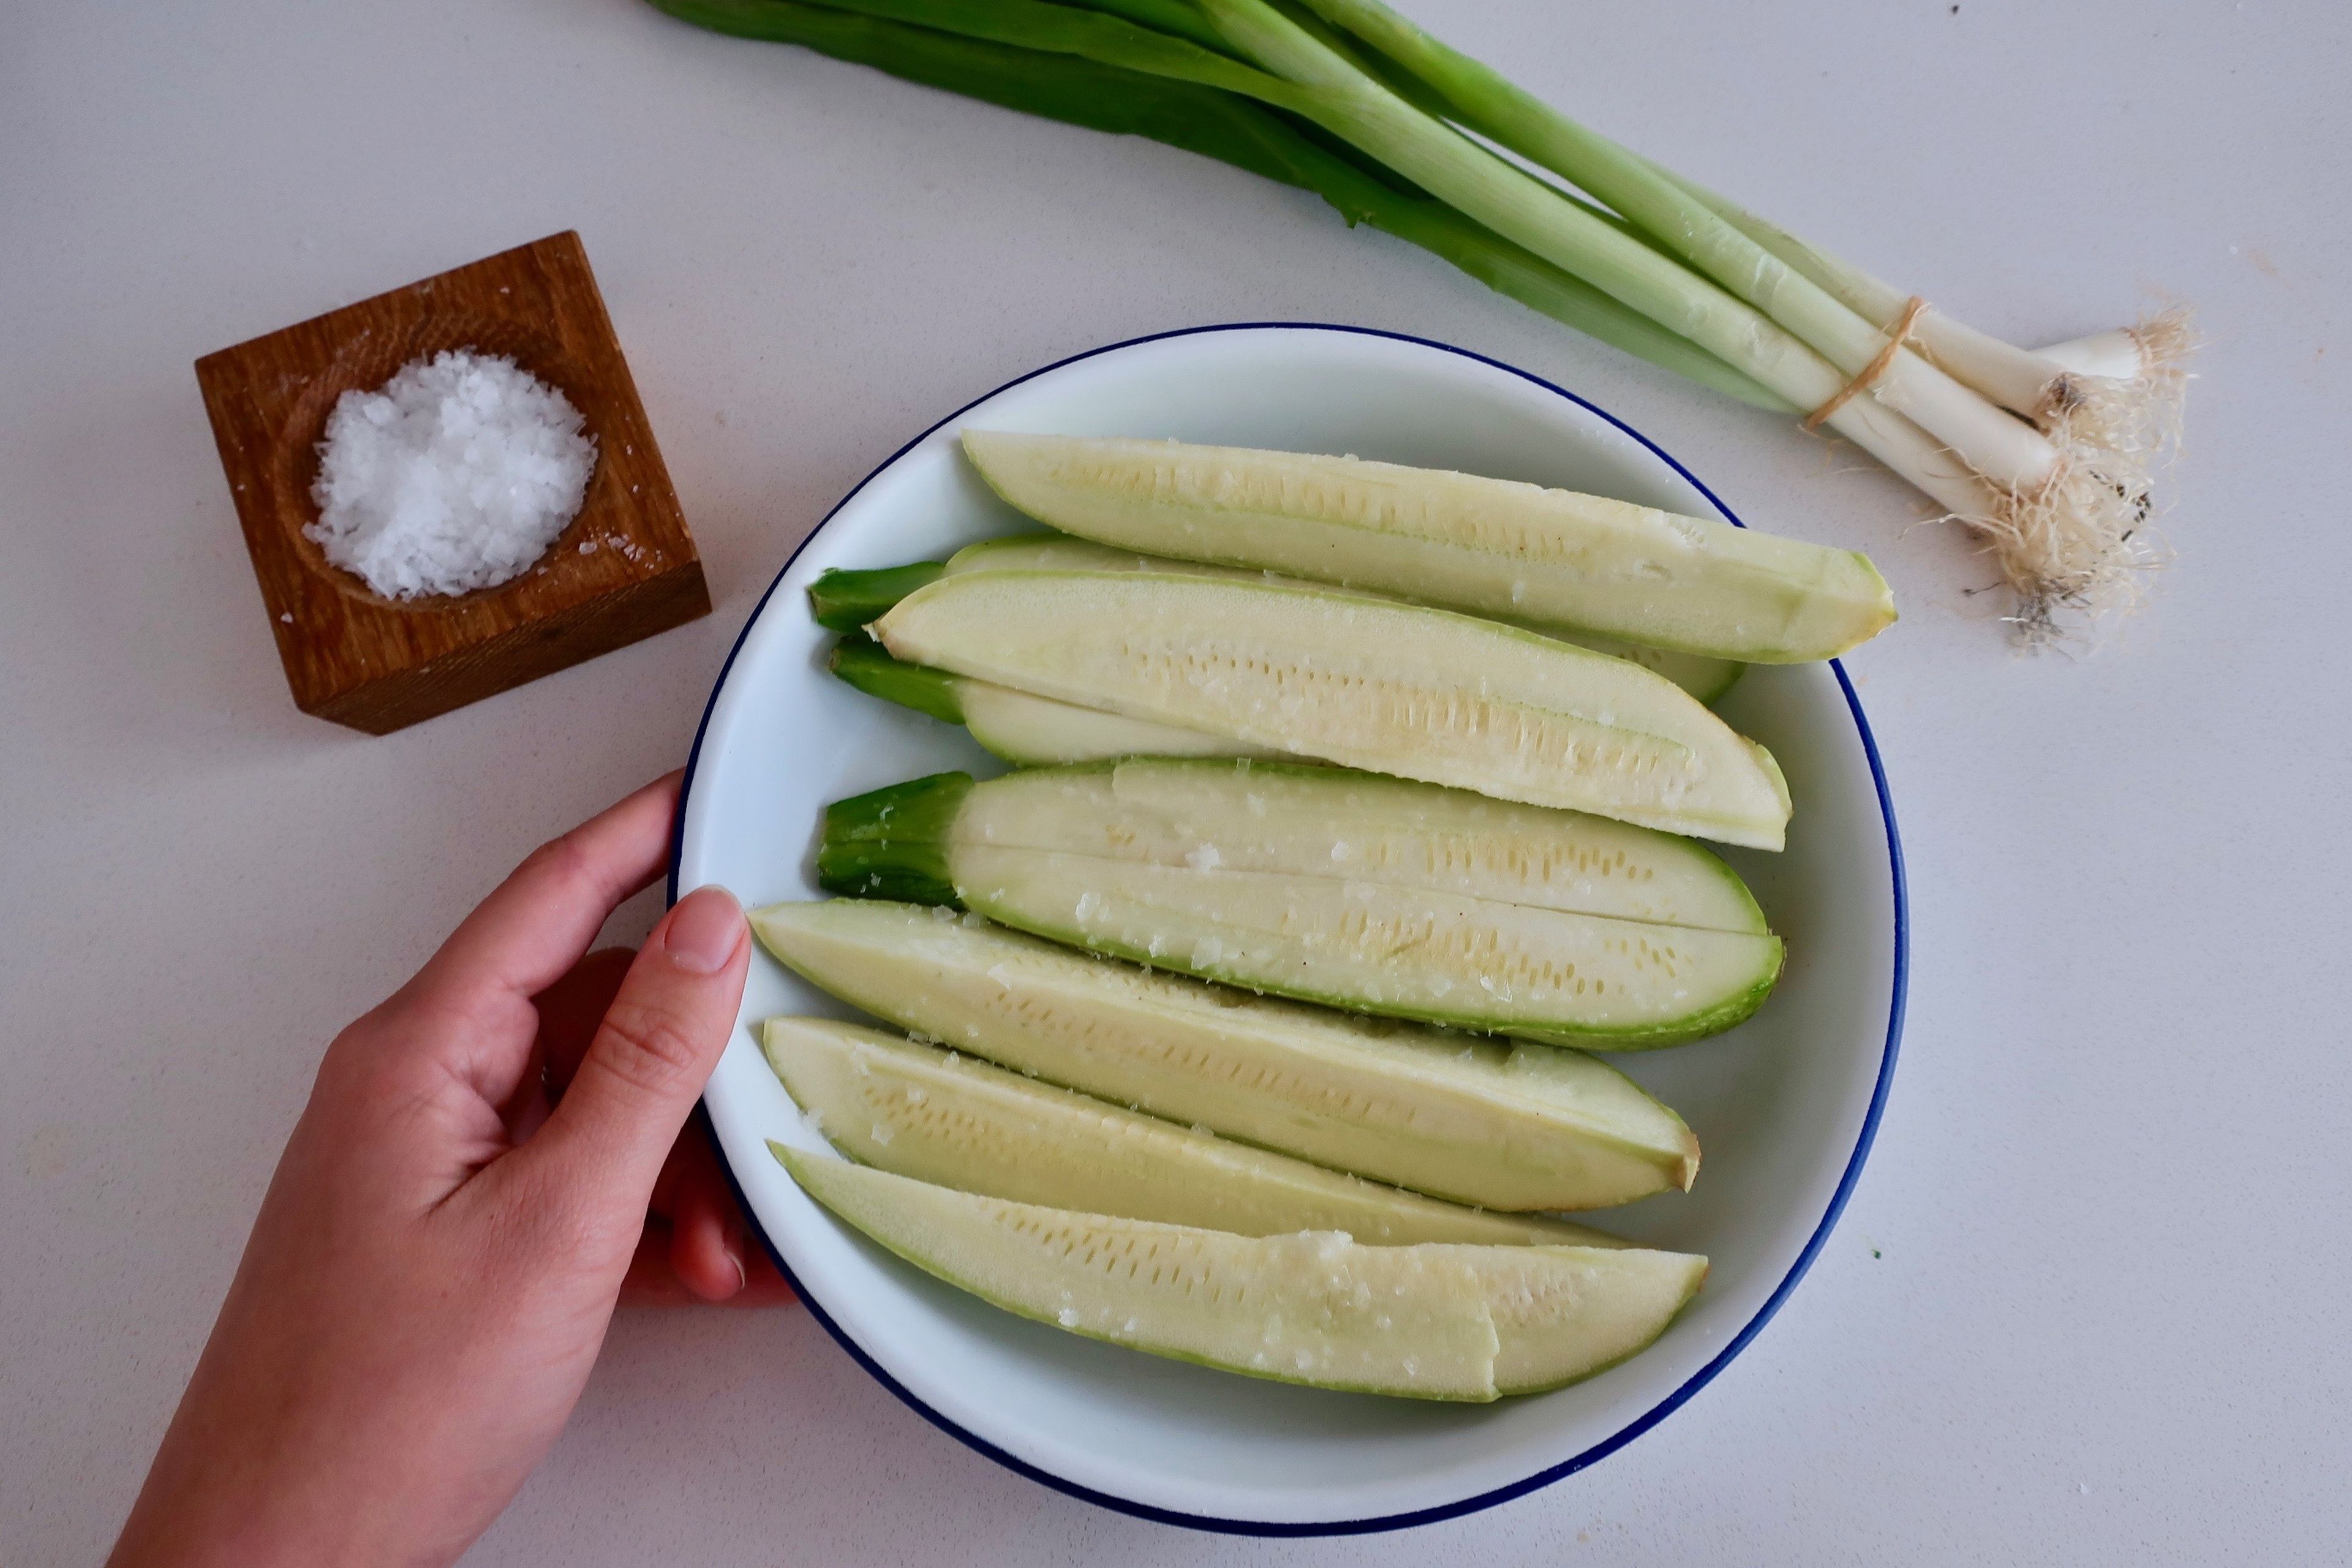 Zucchini der Länge nach in Scheiben schneiden. In eine Schüssel geben und großzügig mit grobem Meersalz bestreuen, um ihnen Wasser zu ziehen und die Zucchini zu würzen. 15 - 30 Min. ruhen lassen. Abspülen und trocken tupfen. Wurzelenden der Frühlingszwiebeln abschneiden. Zucchini zusammen mit den Frühlingszwiebeln und zwei Knoblauchzehen, Hautseite nach unten, auf ein Backblech legen. Aus Ahornsirup und Olivenöl sowie einer Prise Meersalz eine Glasur herstellen. Zucchini und Frühlingszwiebeln mit der Hälfte der Glasur bestreichen. Im Backofen bei mittlerer bis hoher Hitze grillen, nach Bedarf wenden und mehr Glasur aufstreichen. Die Frühlingszwiebeln herausnehmen, wenn sie weich und gebräunt sind. Die Zucchini brauchen länger zum Garen, ca. 10 Min., und können herausgeholt werden, soblad sie leicht braun sind.